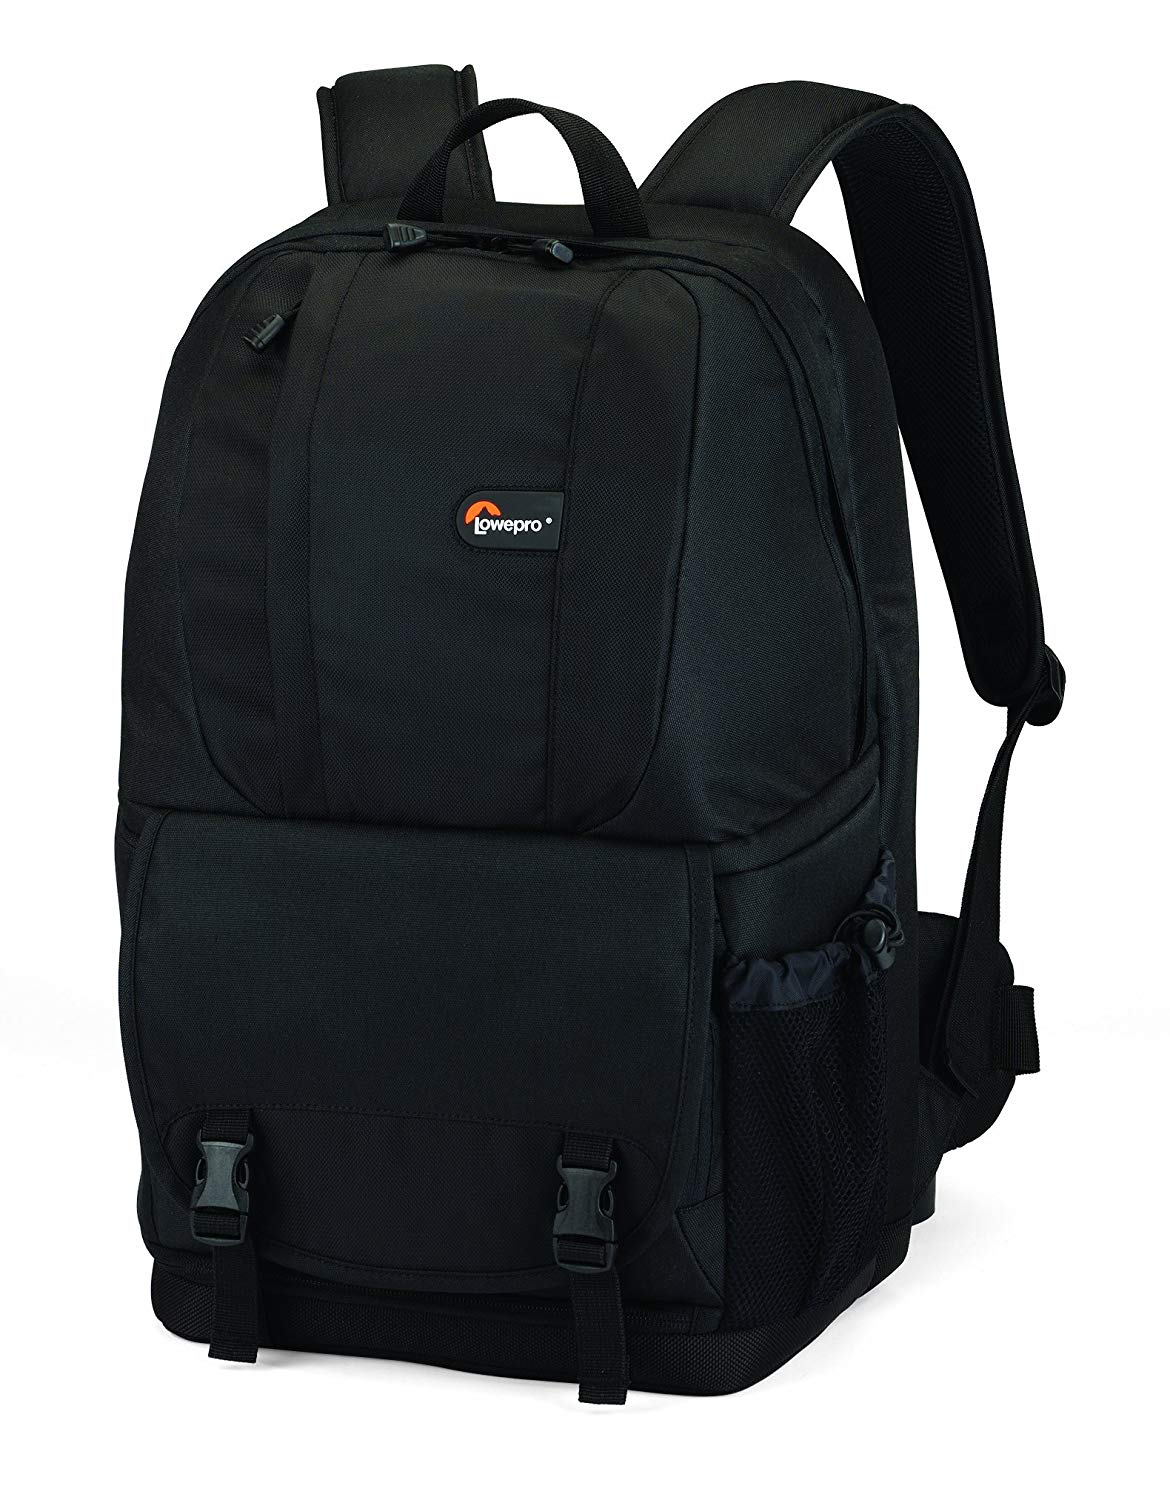 Lowepro Fastpack 250 Camera Backpack